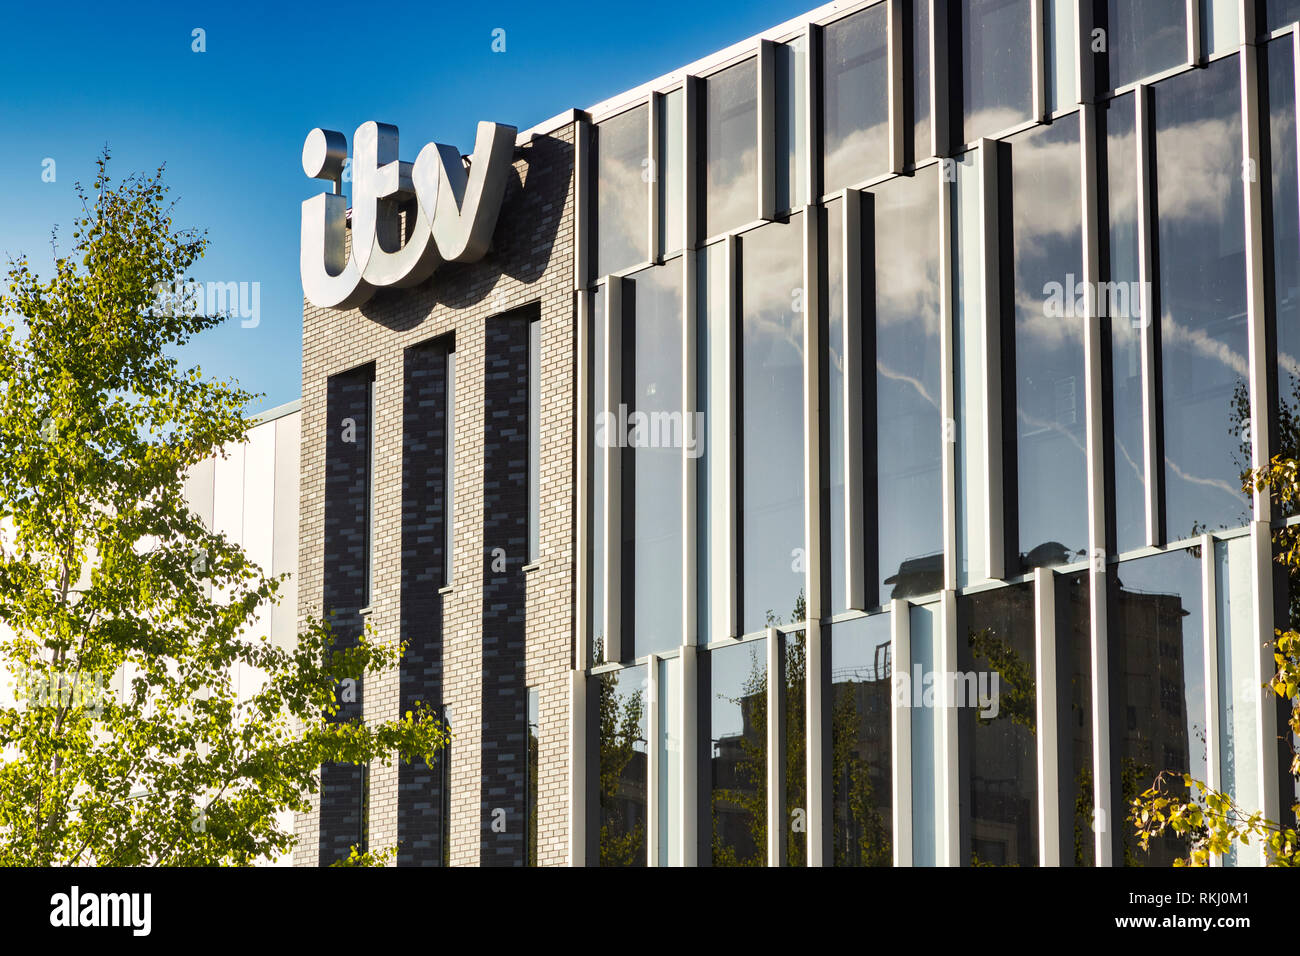 2 novembre 2018 : les quais de Salford, Manchester, UK - bâtiment ITV avec logo, belle journée d'automne avec ciel bleu clair, Feuillage brillant. Banque D'Images